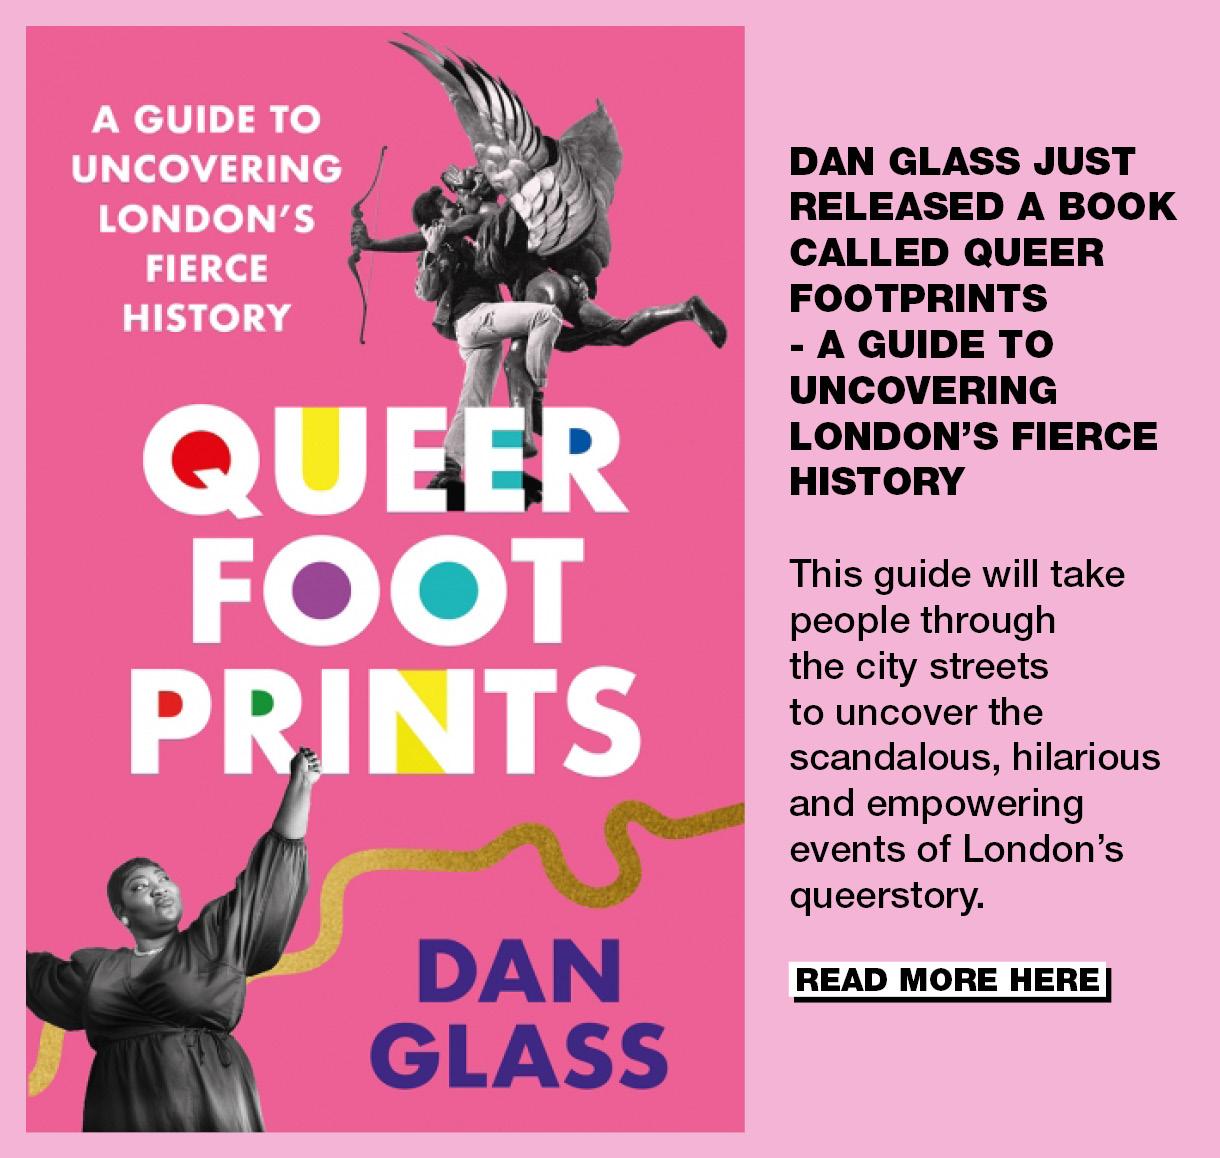 Book Dan Glass